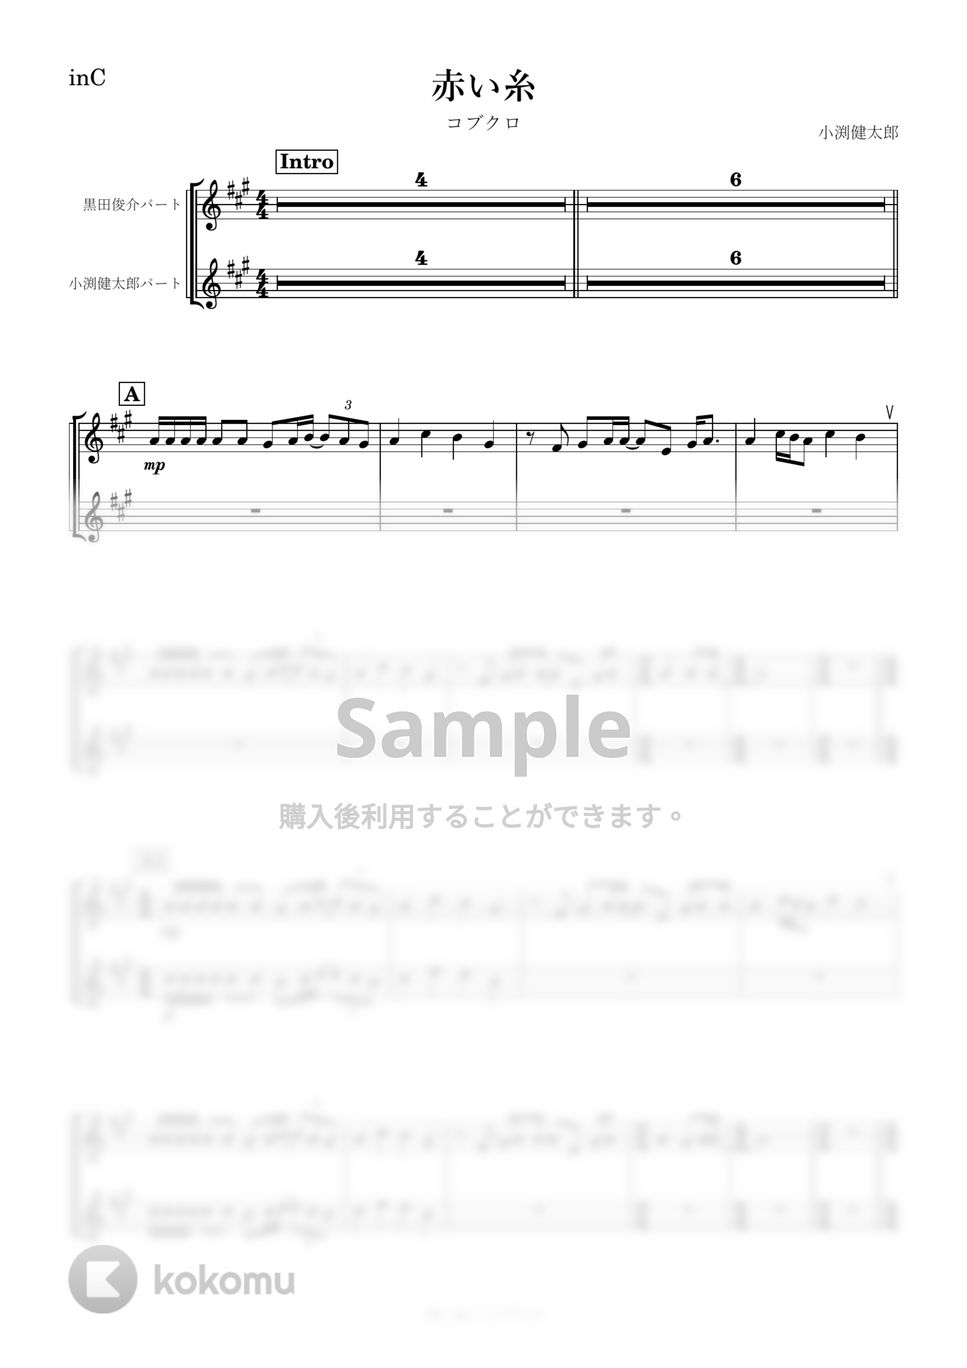 コブクロ - 赤い糸 (C) by kanamusic